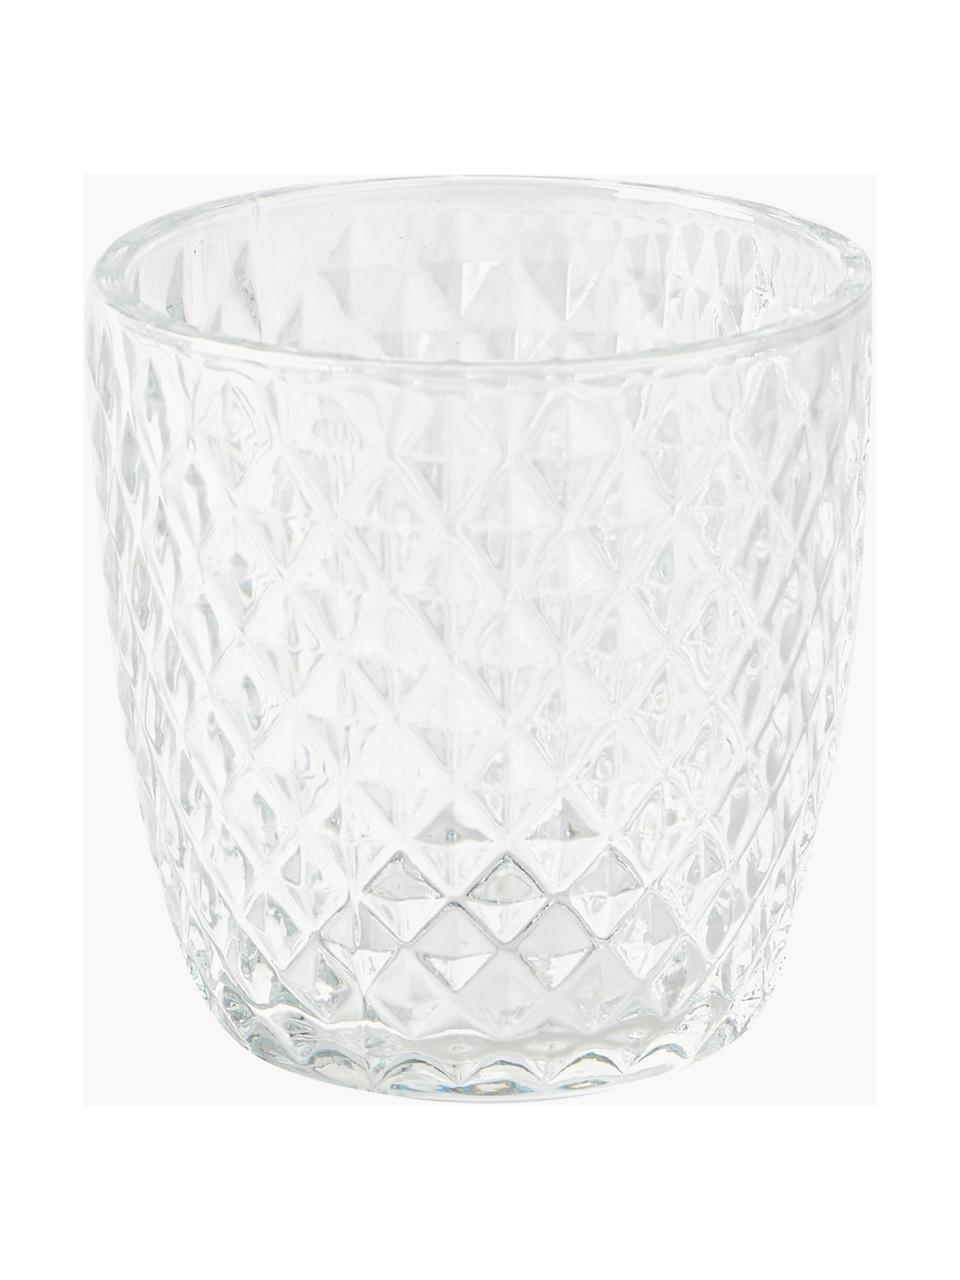 Teelichthalter Marilu aus Glas, 4er-Set, Glas, Transparent, Ø 8 x H 8 cm